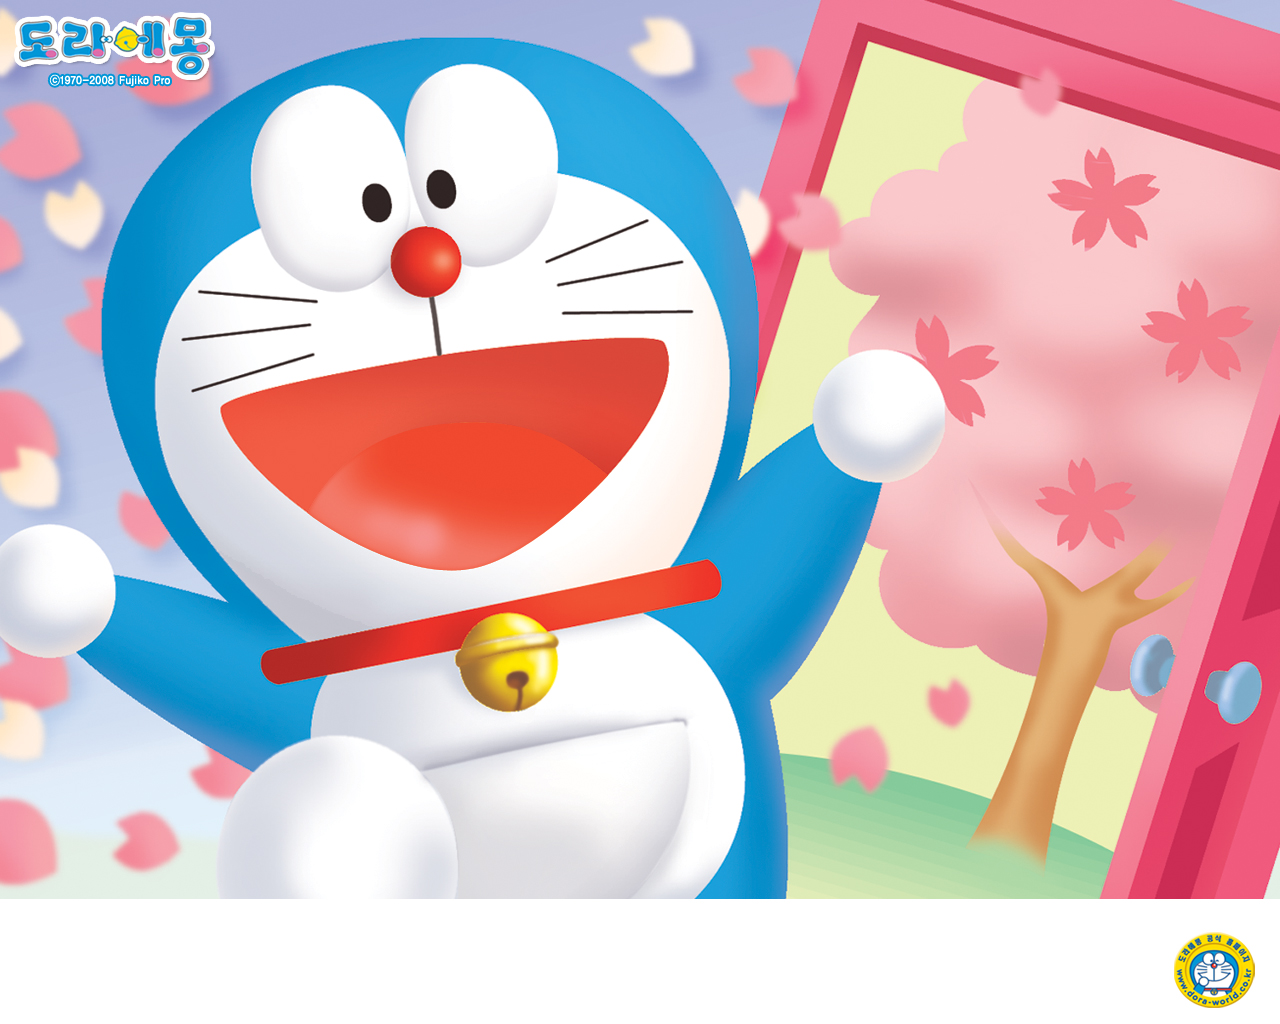 Anime, Doraemon: Hãy đặt mắt nhìn vào hình ảnh này, bạn sẽ được đắm chìm trong thế giới anime đầy màu sắc và kỳ diệu của Doraemon. Từ những món đồ chơi thông minh đến các trò chơi hấp dẫn, Doraemon luôn là trợ thủ đắc lực của các em nhỏ.